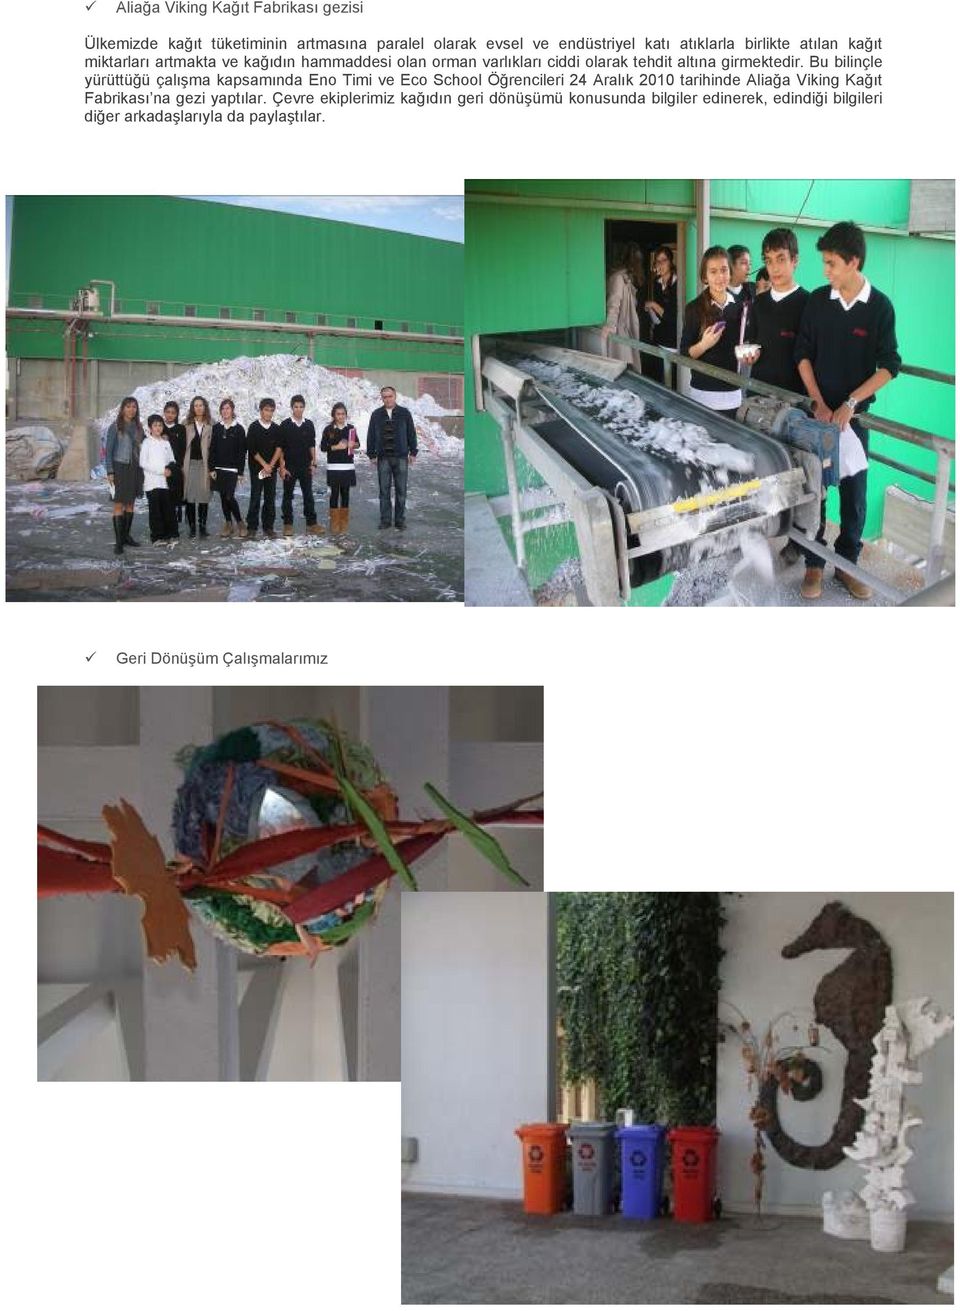 Bu bilinçle yürüttüğü çalışma kapsamında Eno Timi ve Eco School Öğrencileri 24 Aralık 2010 tarihinde Aliağa Viking Kağıt Fabrikası na gezi